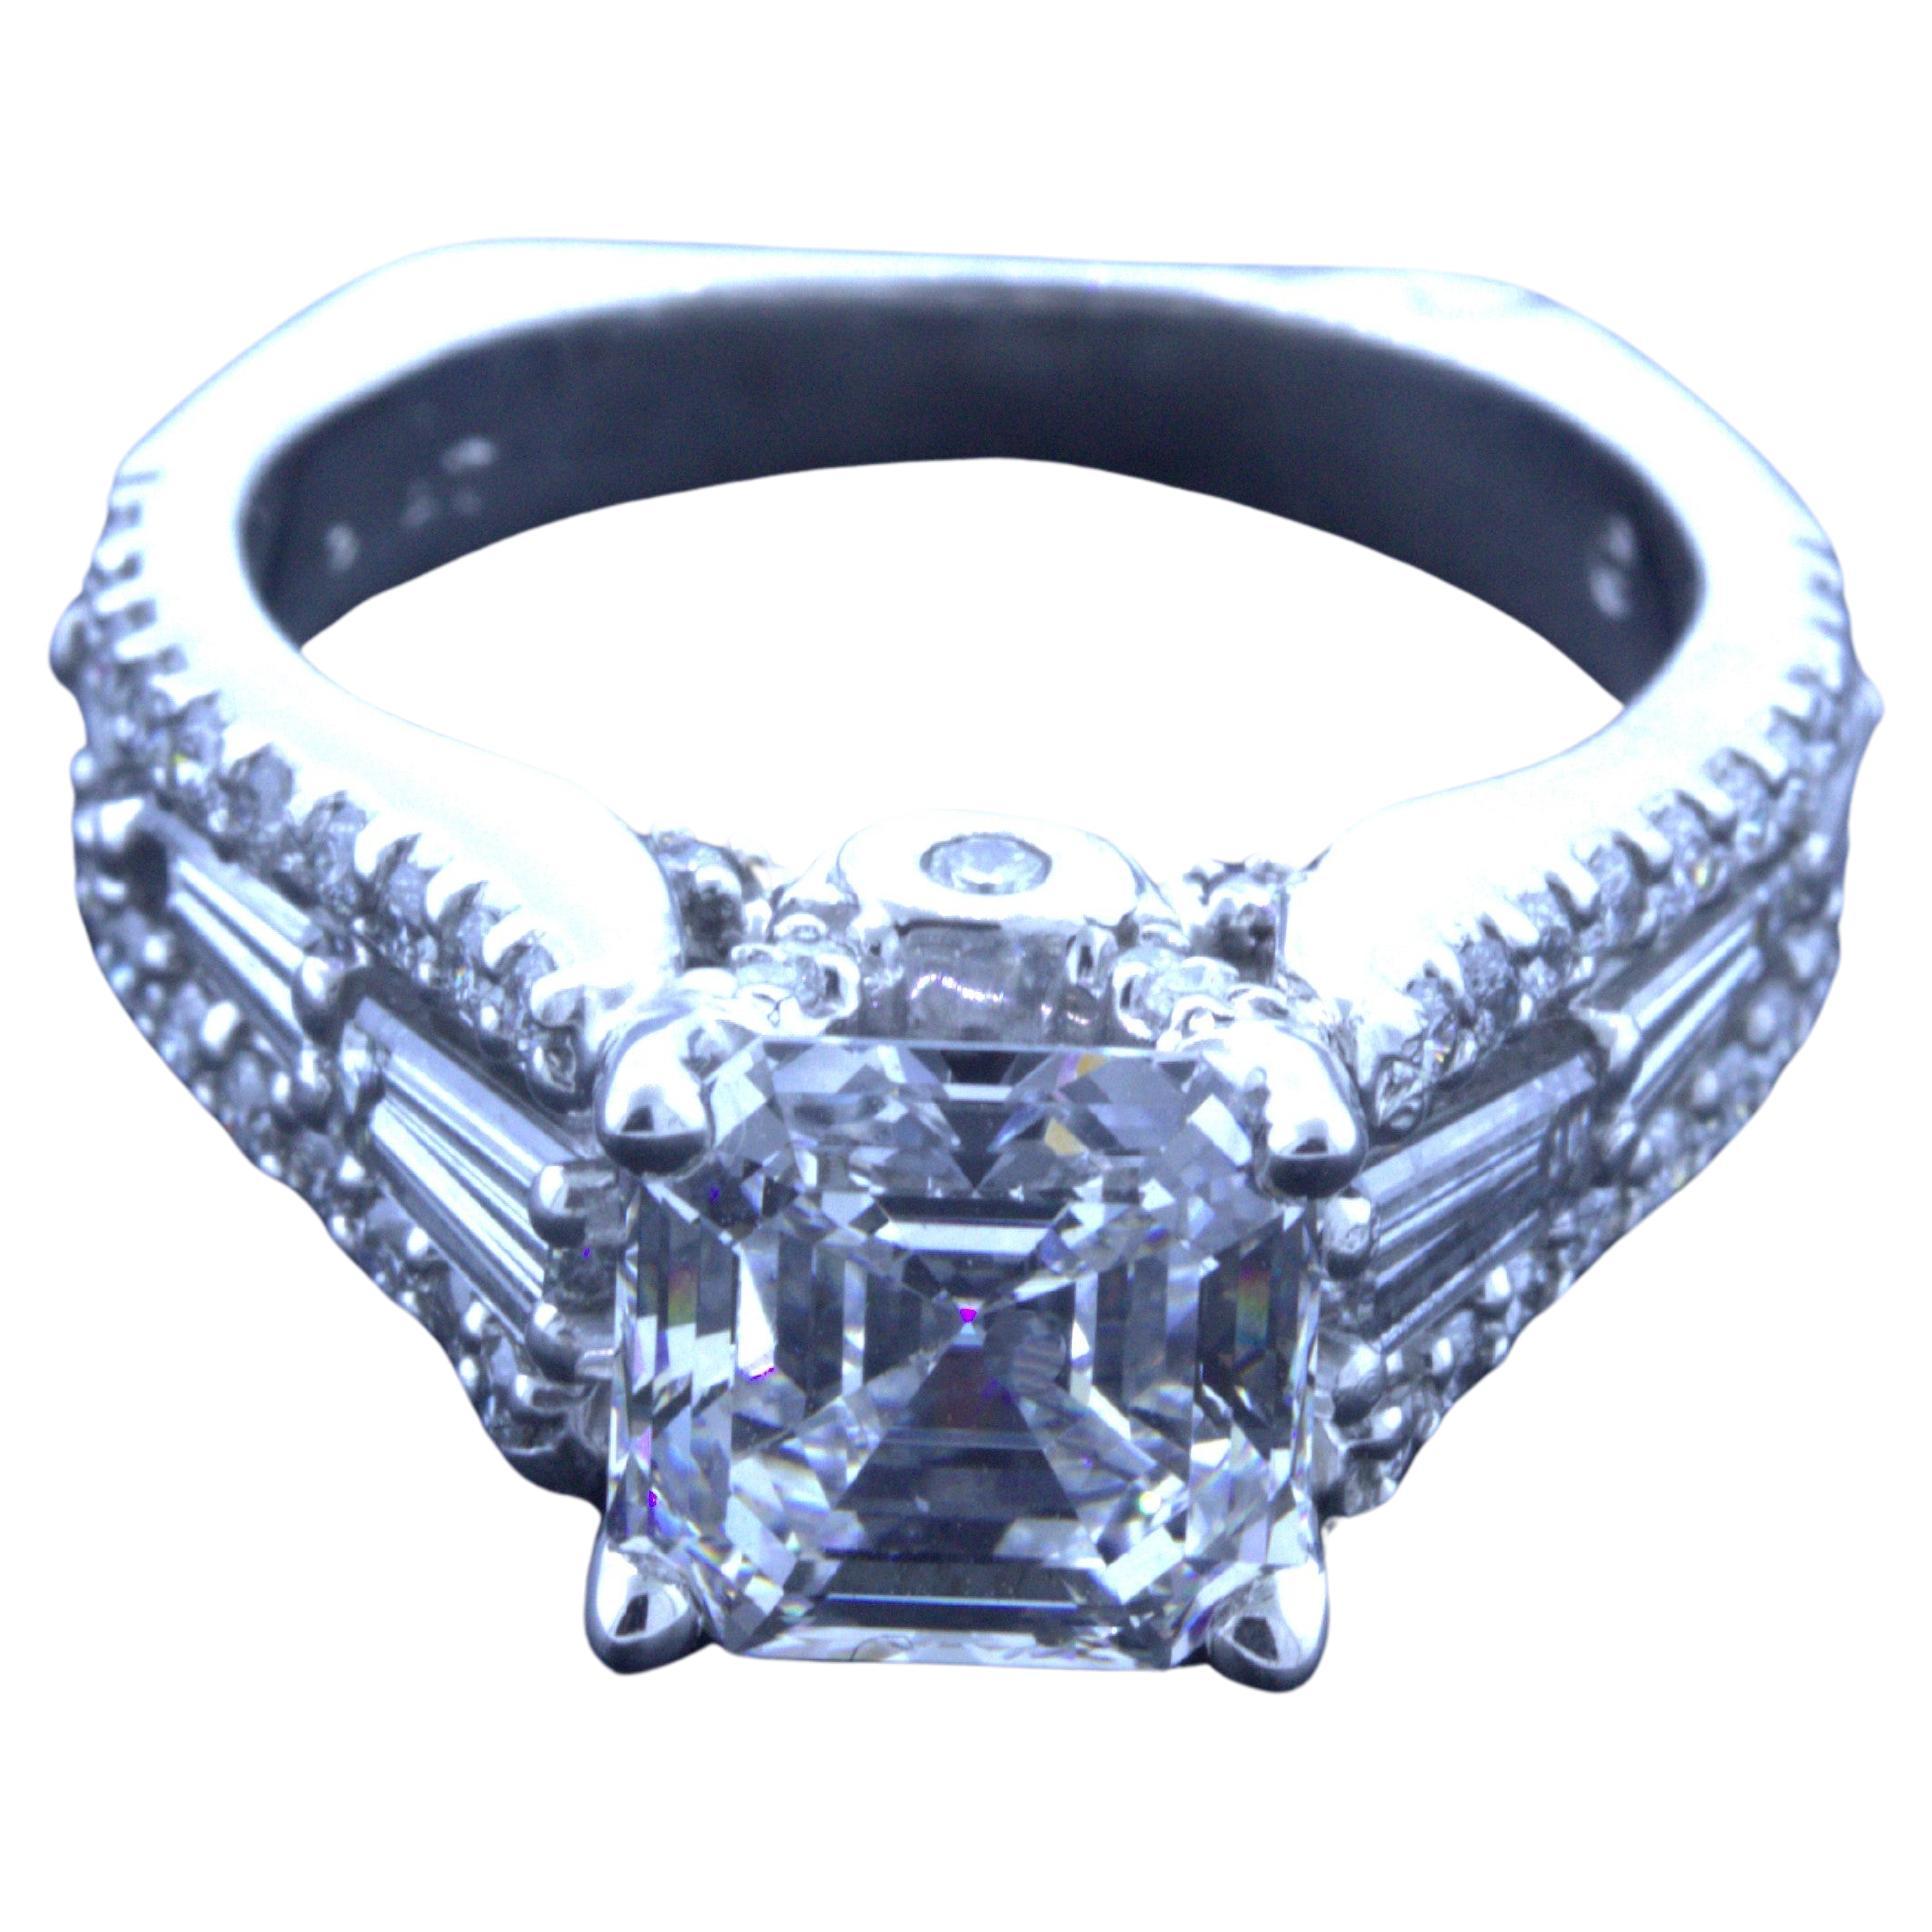 2.19 Carat D-VS2 Asscher-cut Diamond Platinum Engagement Ring, GIA Certified